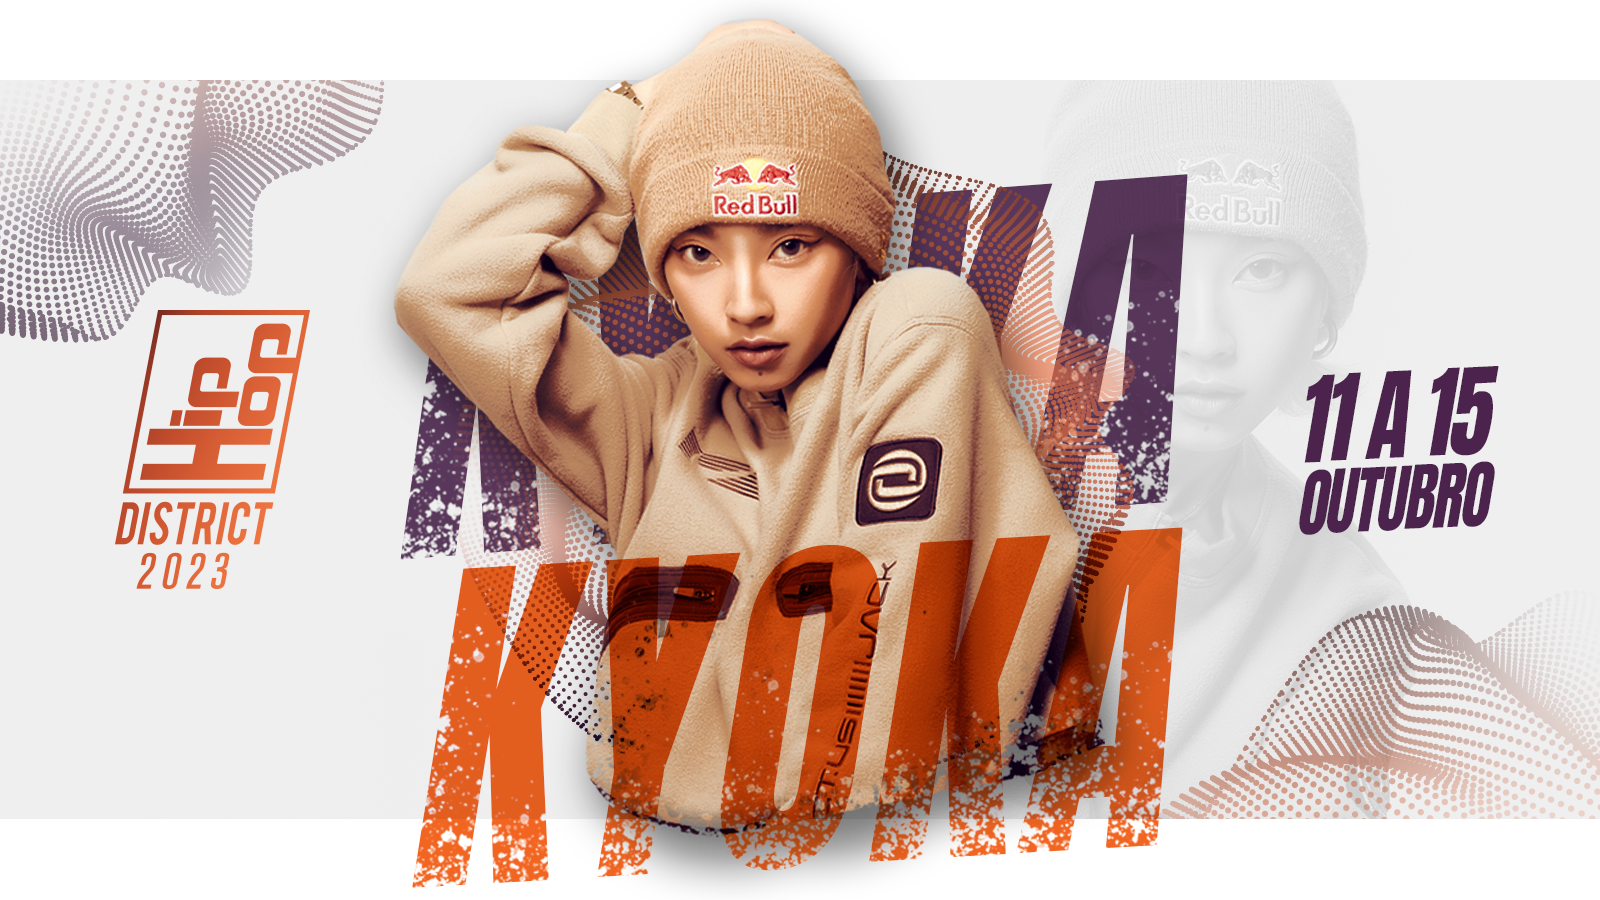 Esta imagen presenta a la artista Kyoka, junto con el logo de Hip Hop District y la fecha del evento.